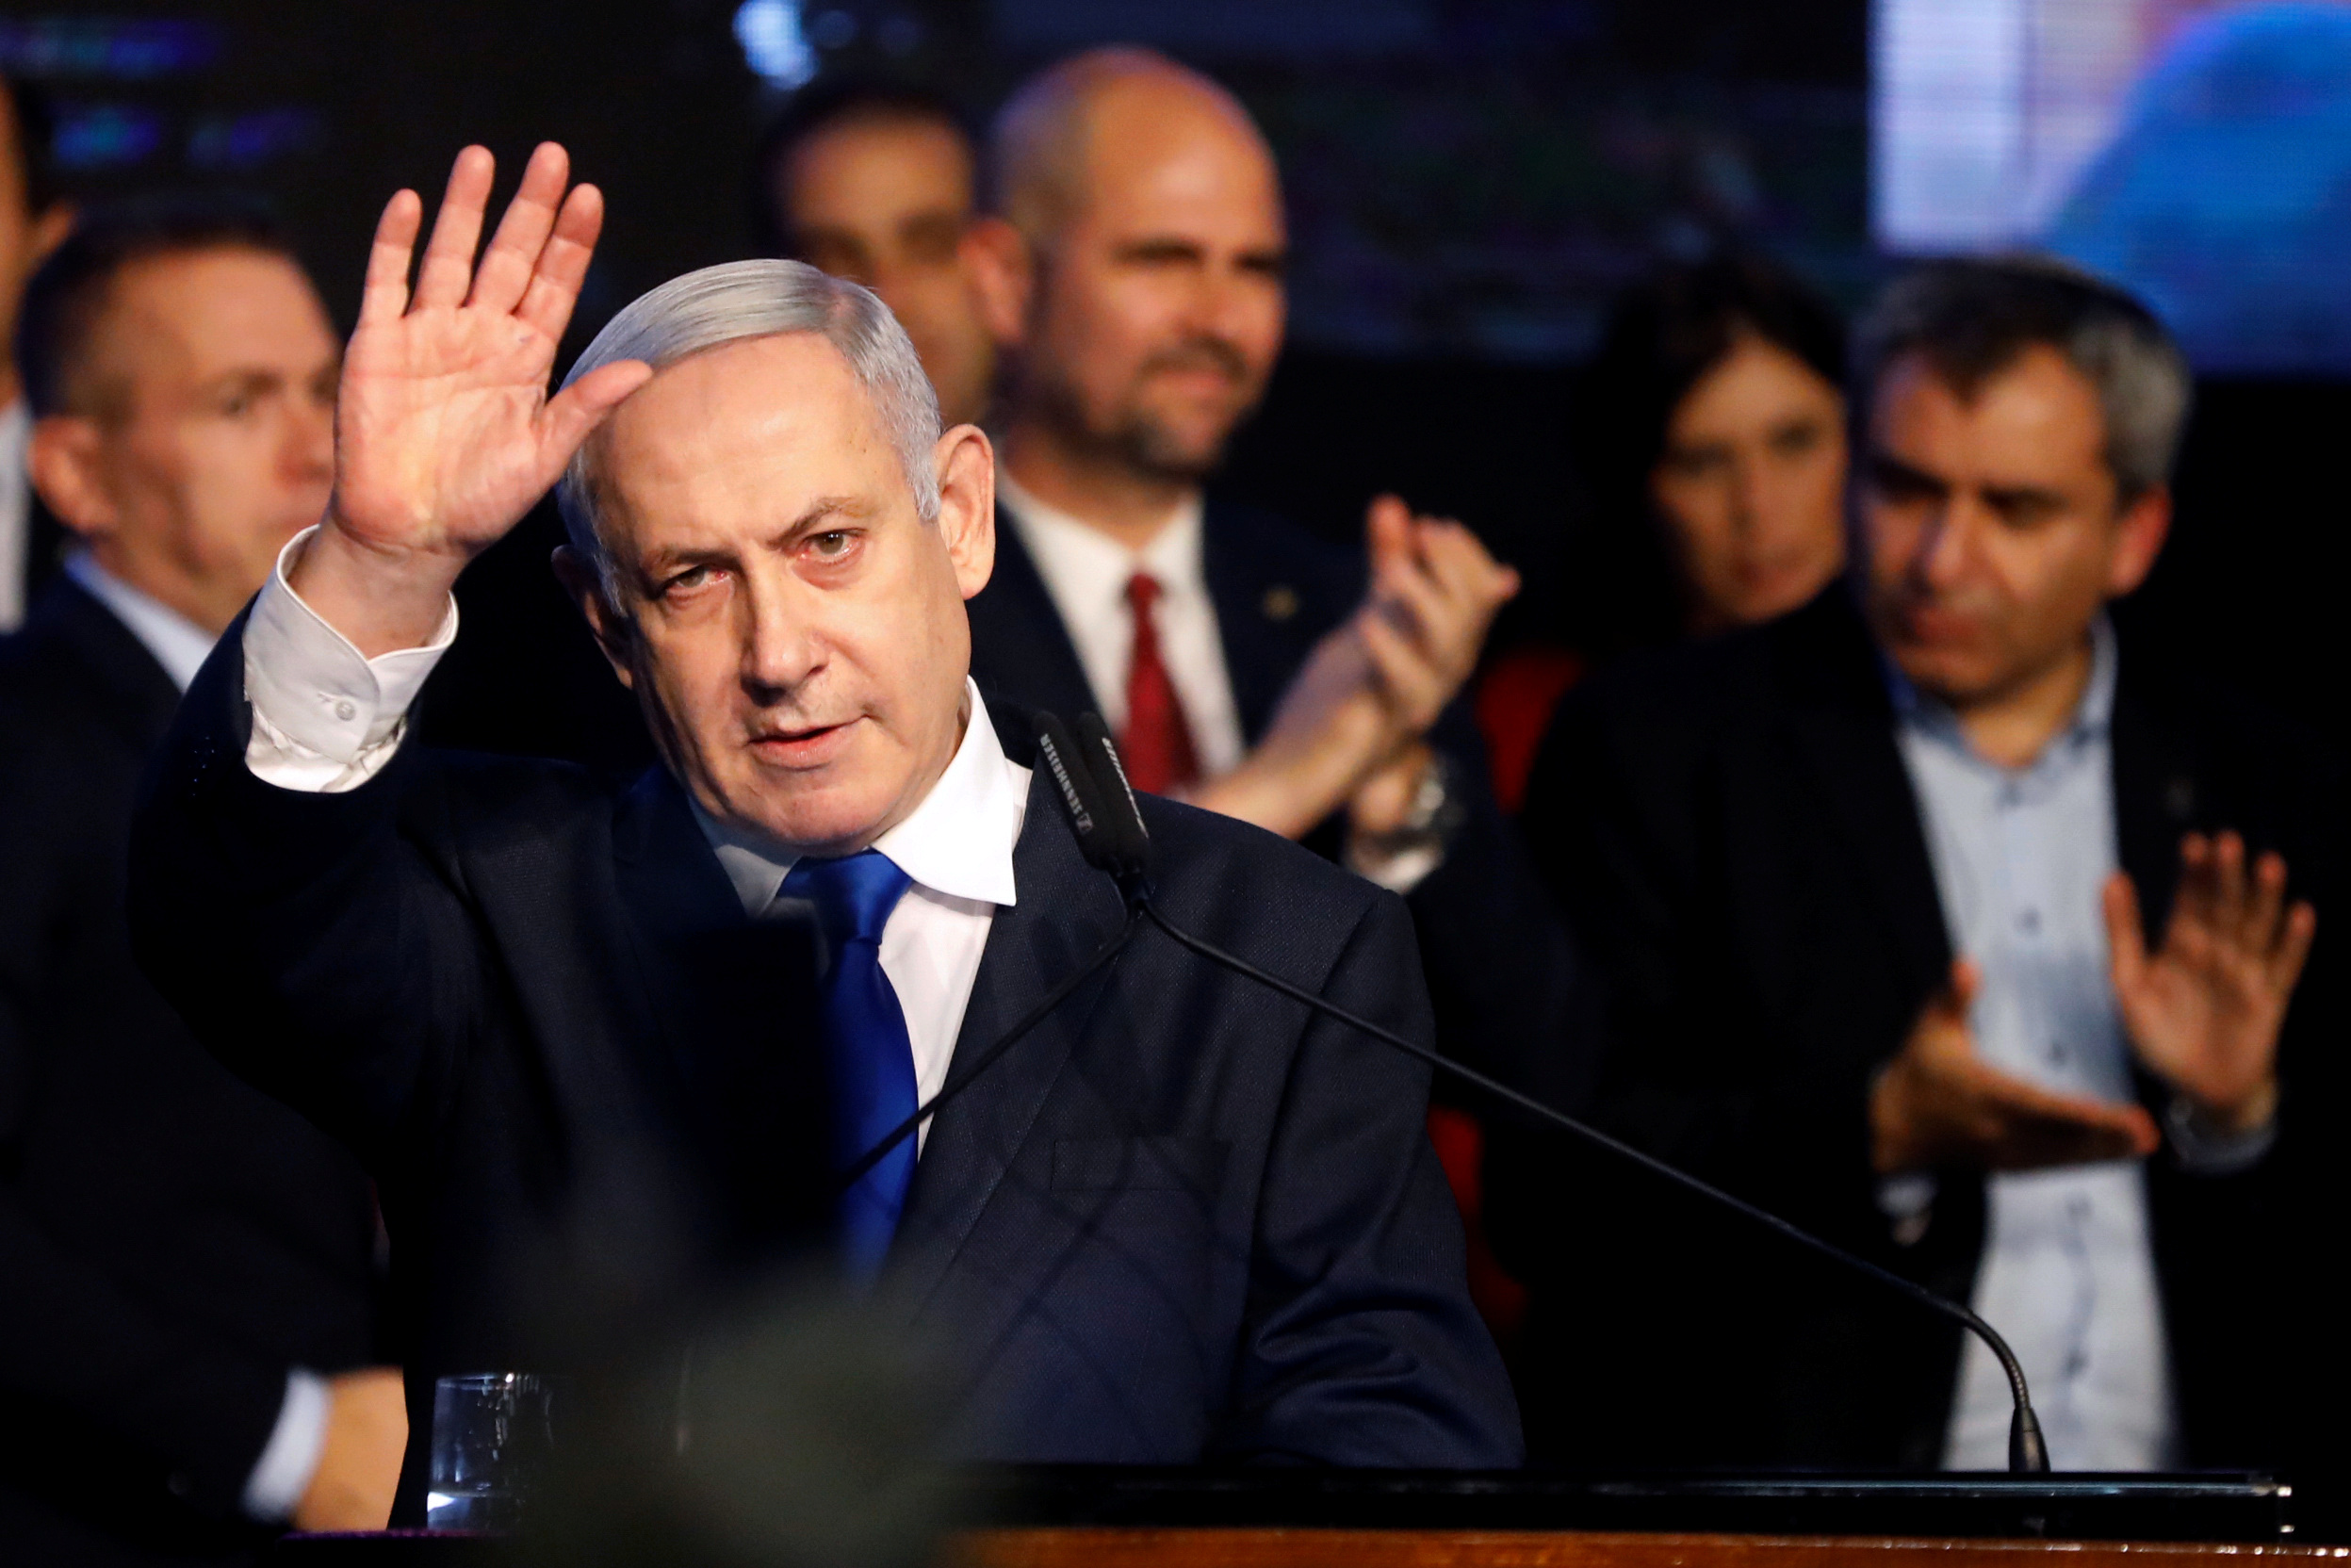 Le Premier ministre israélien Benjamin Netanyahu a été formellement inculpé jeudi pour corruption, fraude et abus de confiance par le procureur général d'Israël Avichai Mandelblit. /Photo prise le 17 novembre 2019/REUTERS/Nir Elias